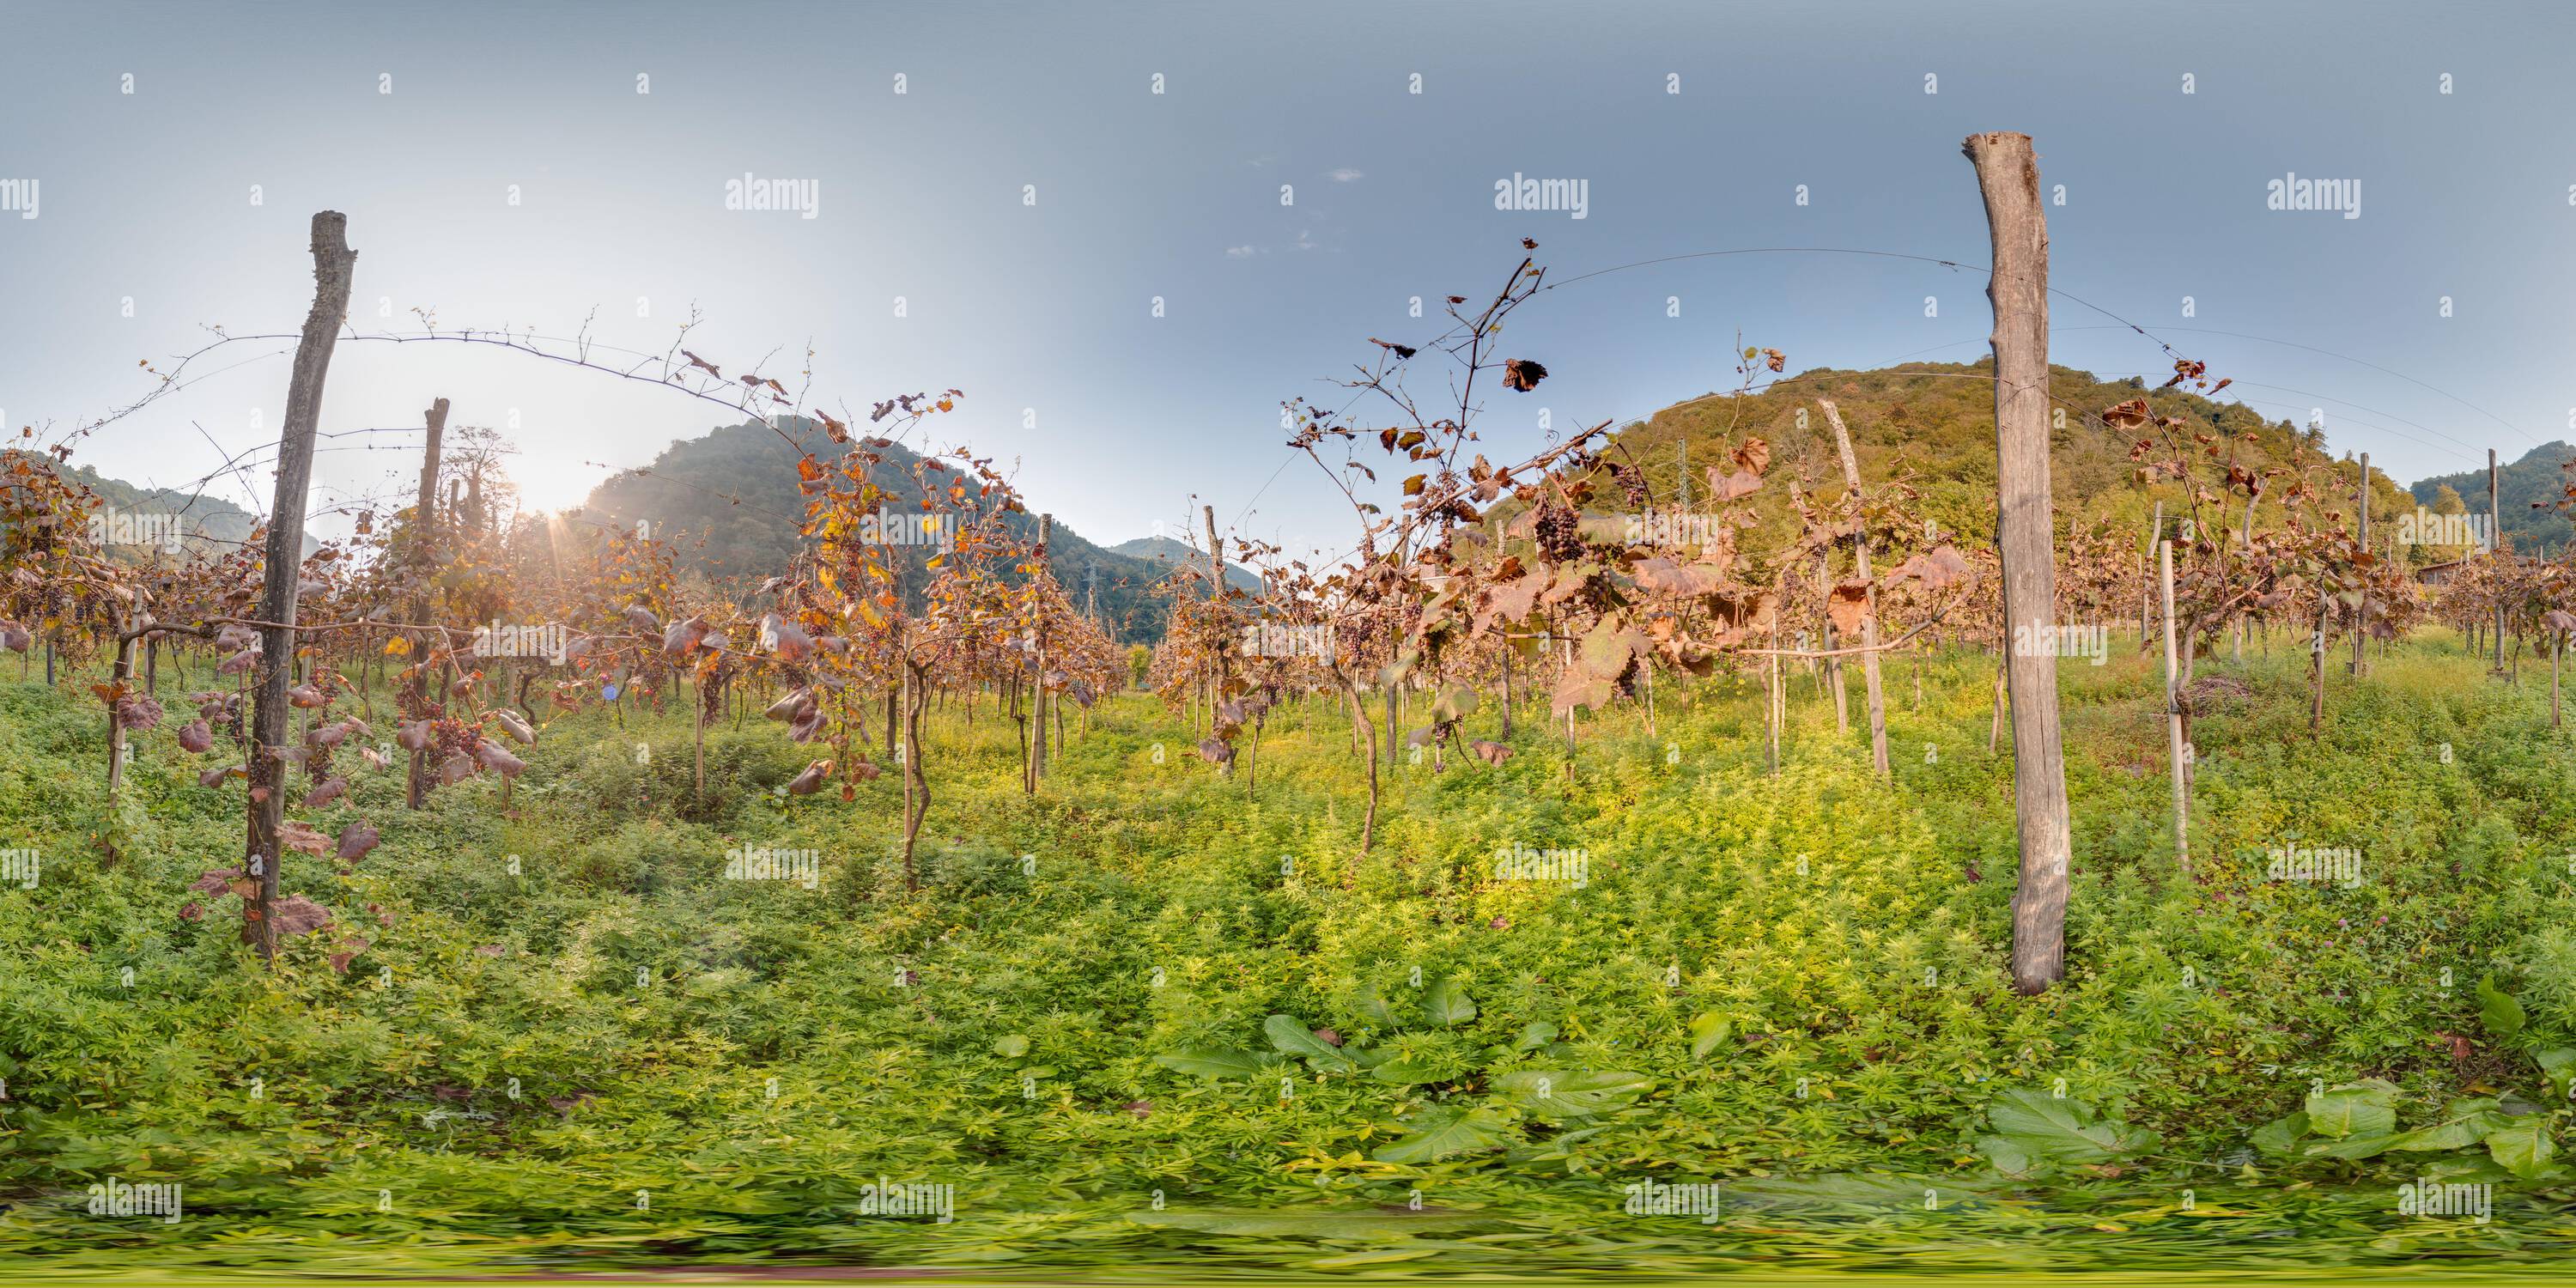 360 Grad Panorama Ansicht von Weinberg mit Traube im Herbst in den Bergen schöner Hintergrund. Bild mit 3D kugelförmigem Panorama mit 360 Grad Betrachtungswinkel. Bereit für das Kleinerhaben